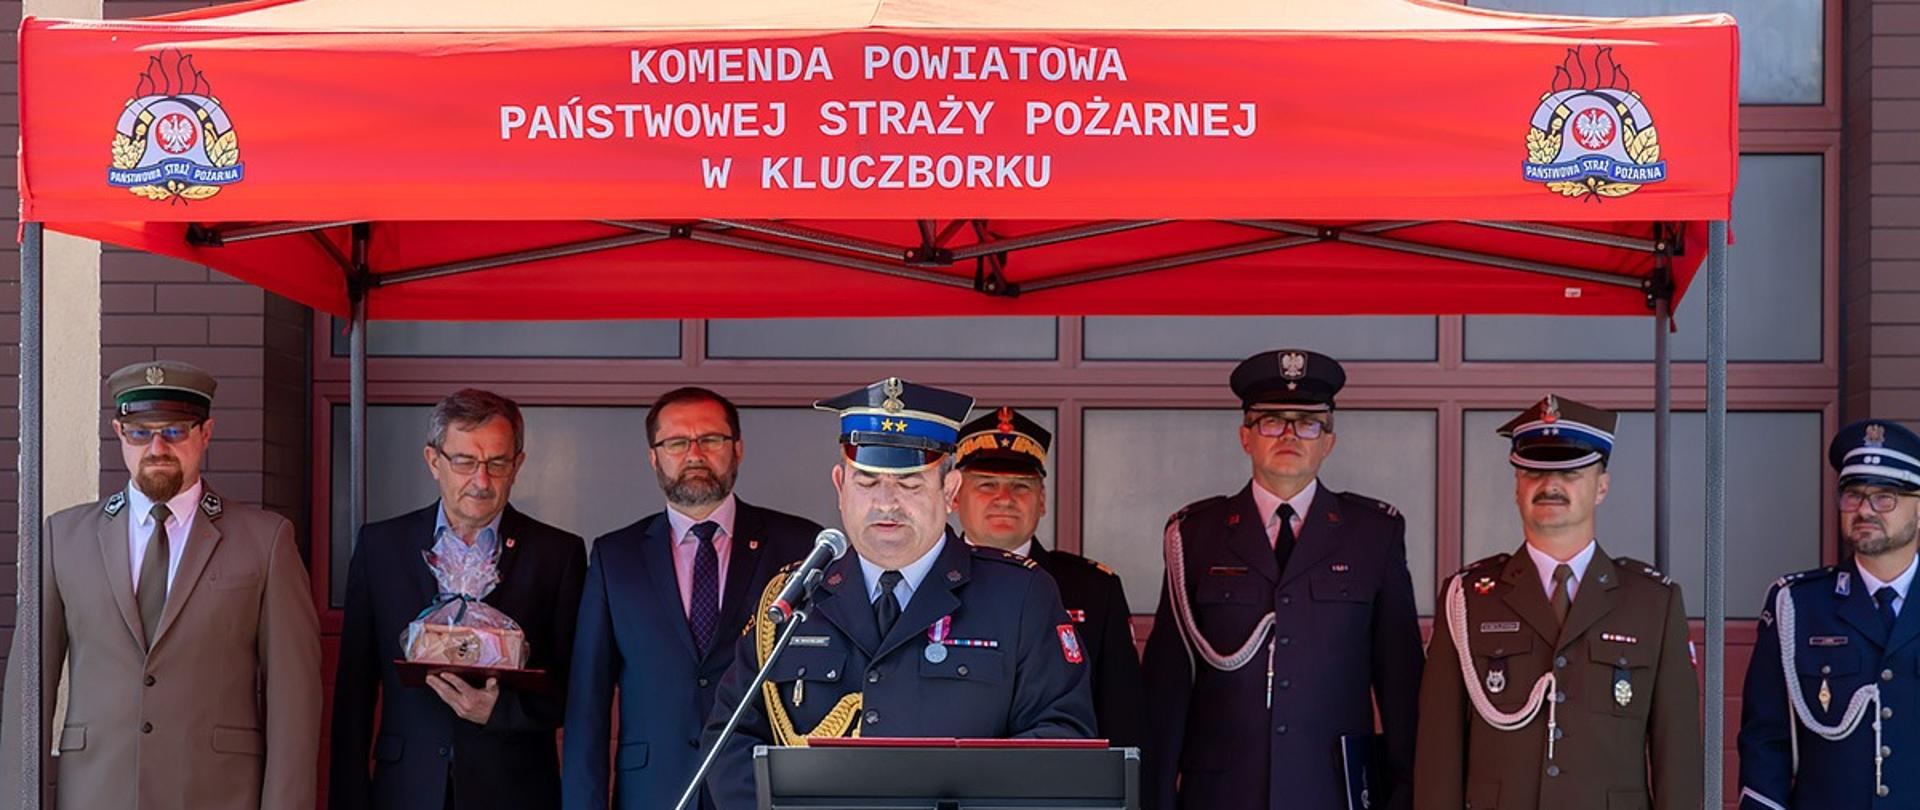 Komendant Powiatowy PSP w Kluczborku podczas przemówienia w trakcie uroczystej zbiórki 